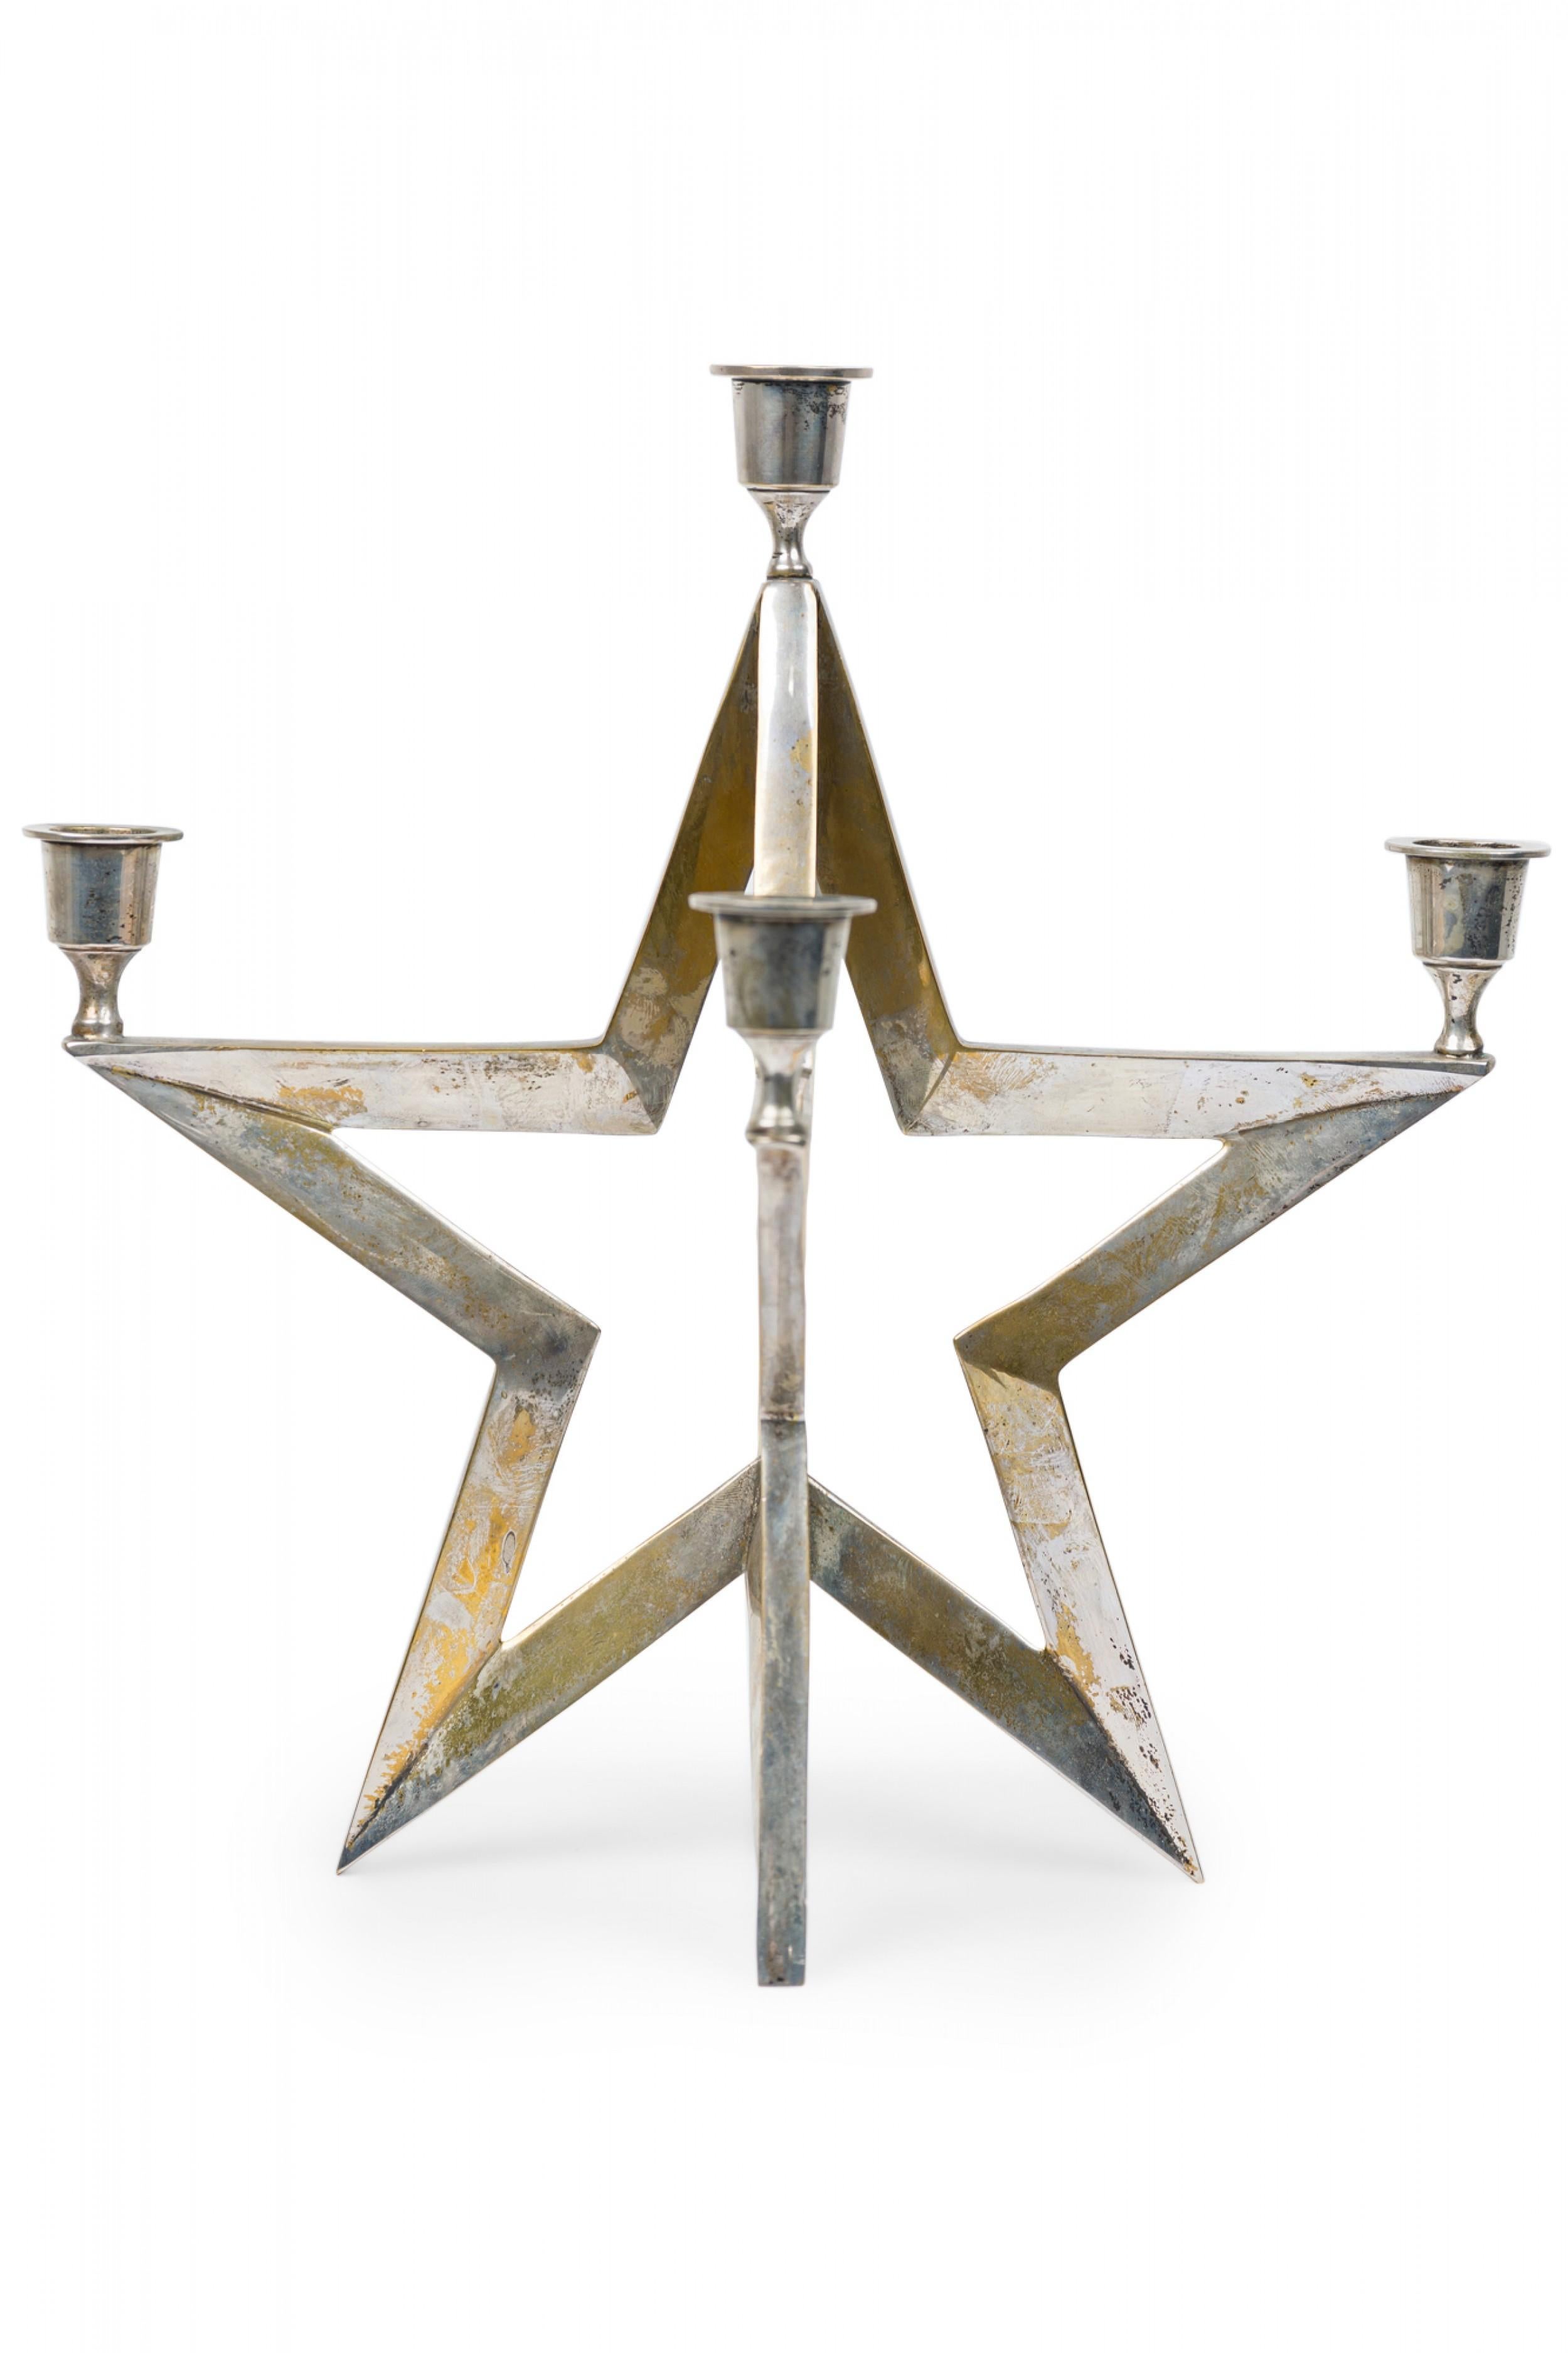 Zeitgenössische amerikanische Sternform Metallkerze mit 5 Armen mit Kerzenbechern.